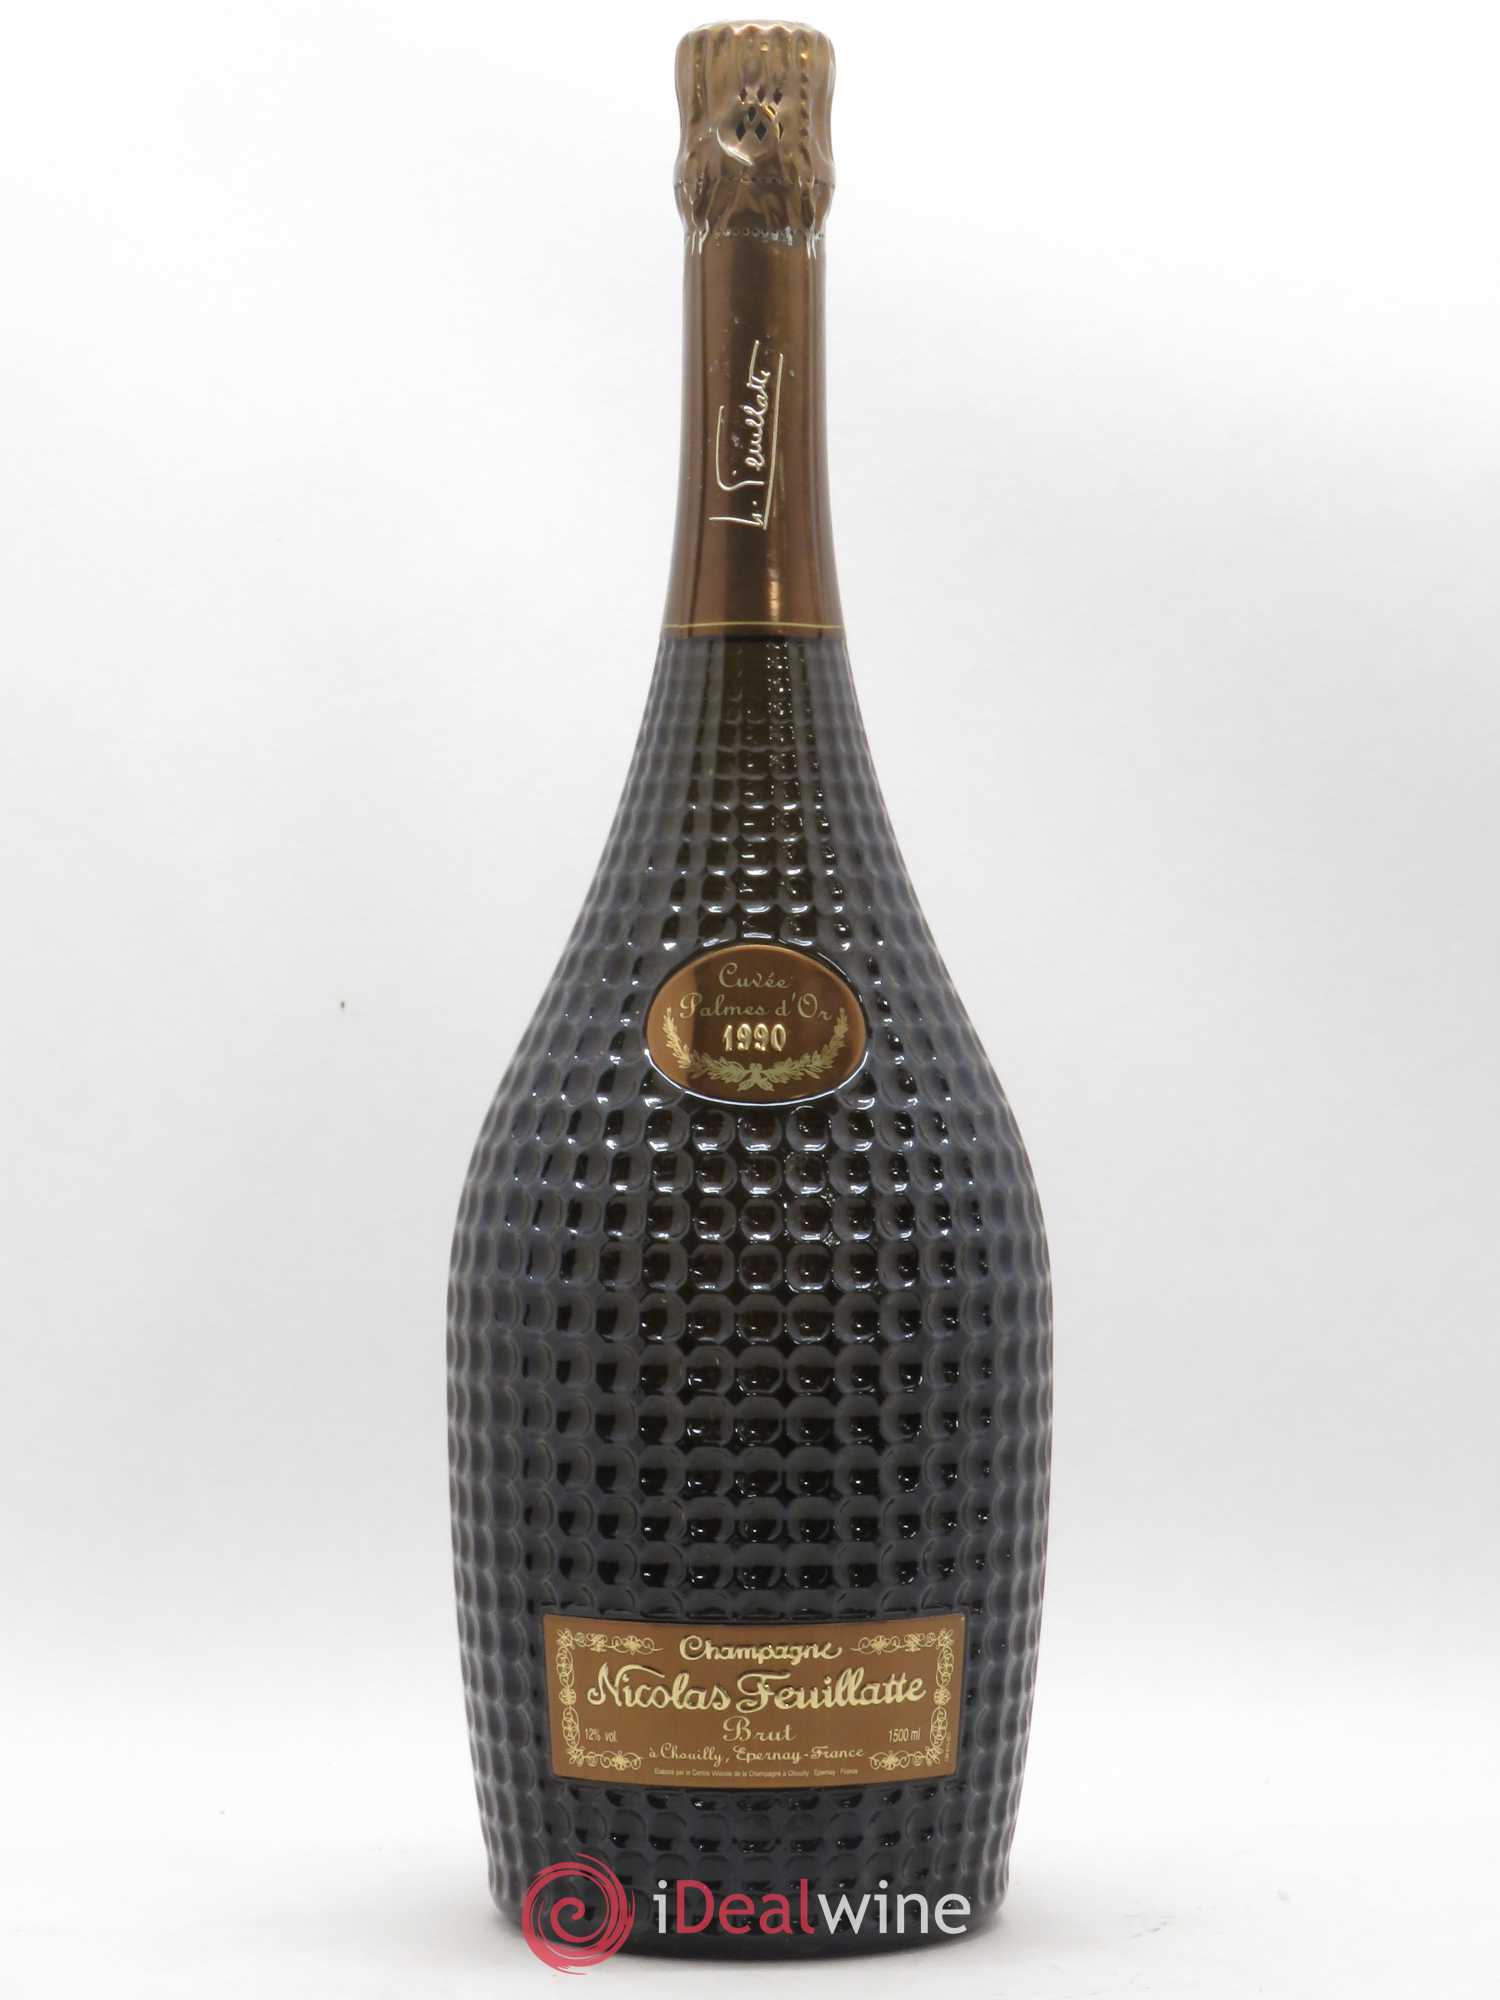 Capsule de Champagne Nicolas FEUILLATTE 59. Edition limitée